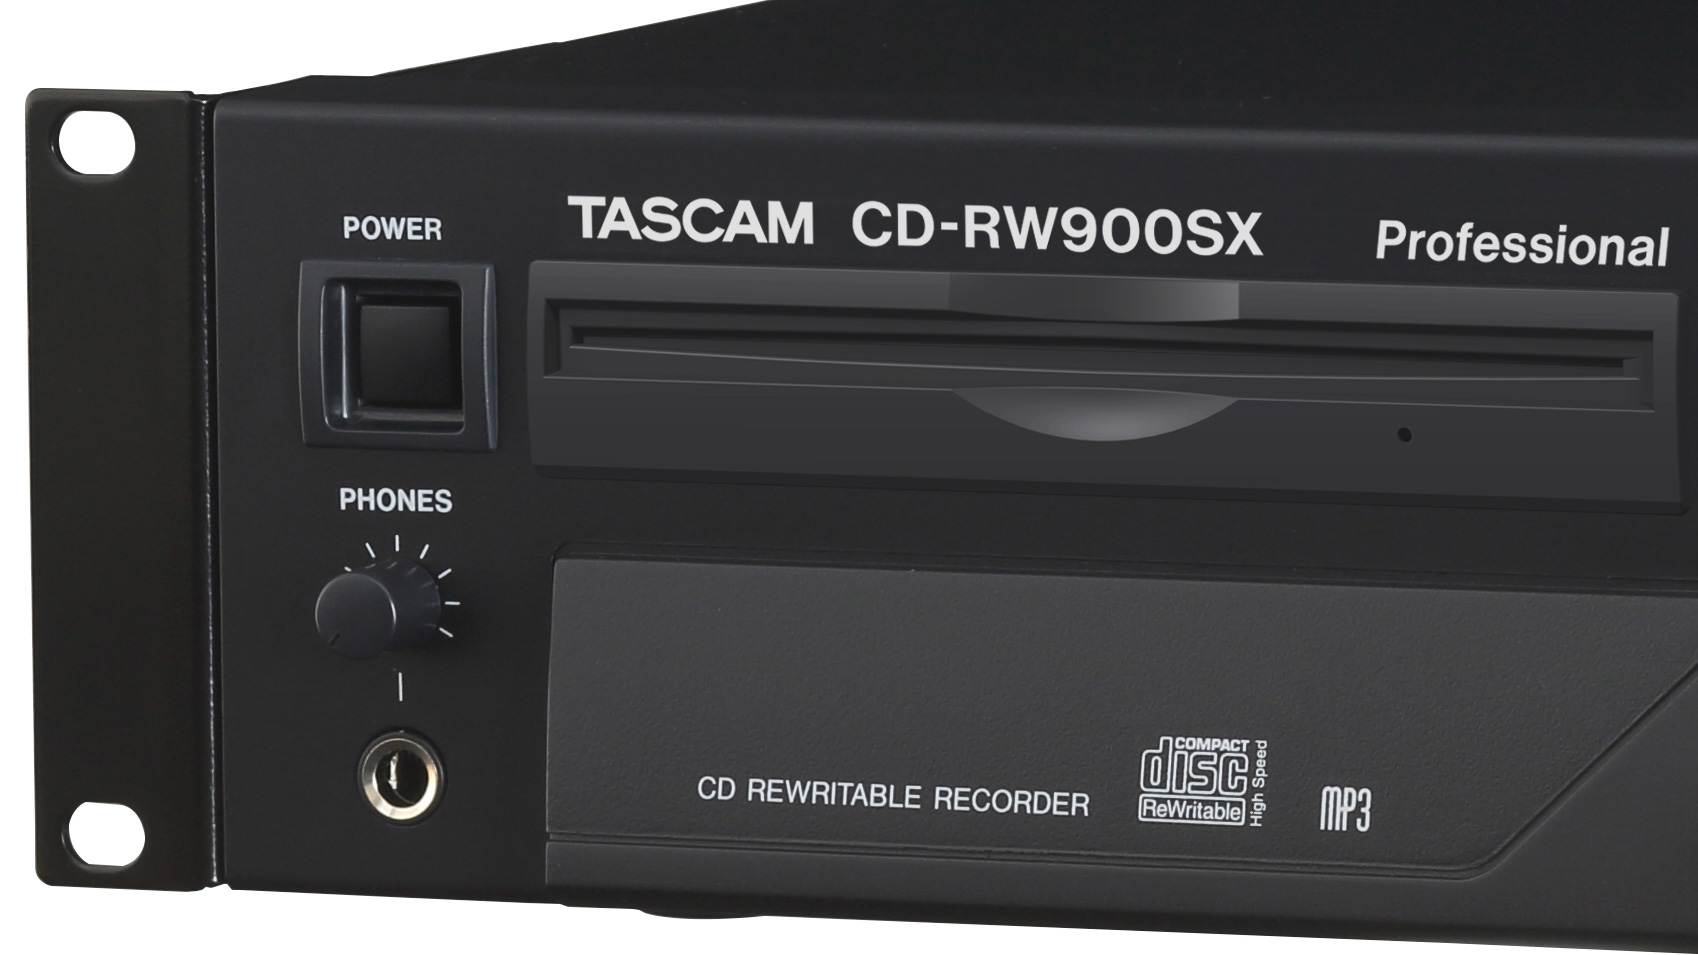 CD-RW900SX